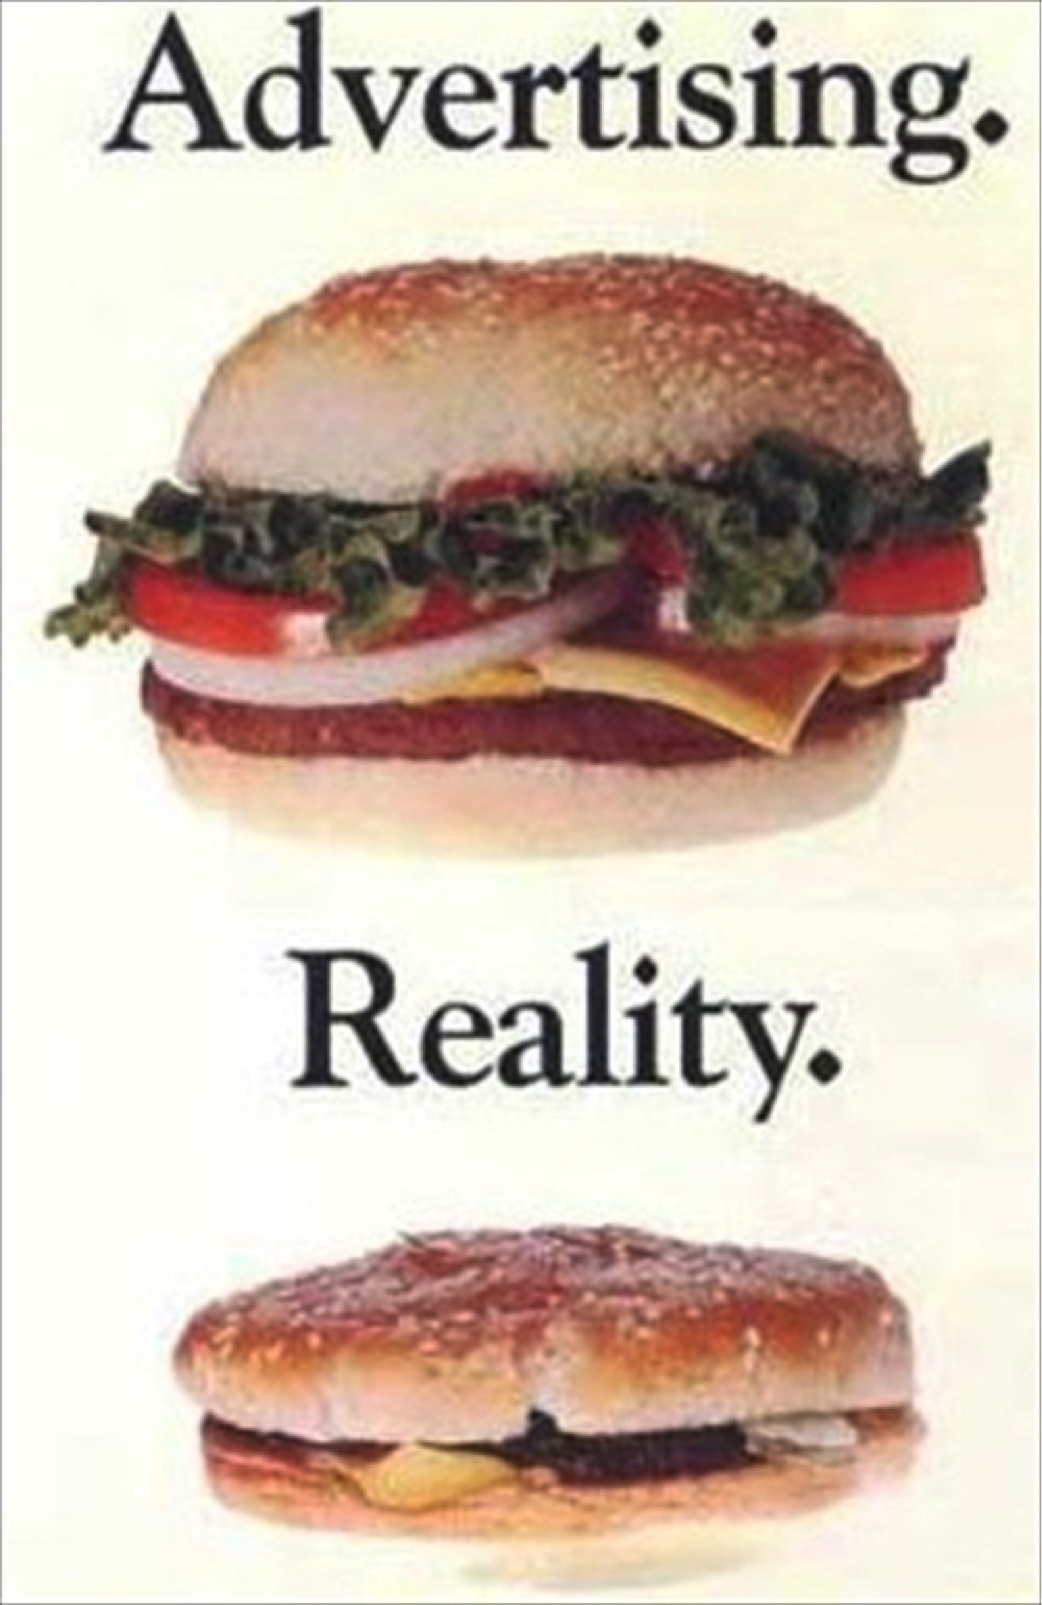 false advertising hamburger